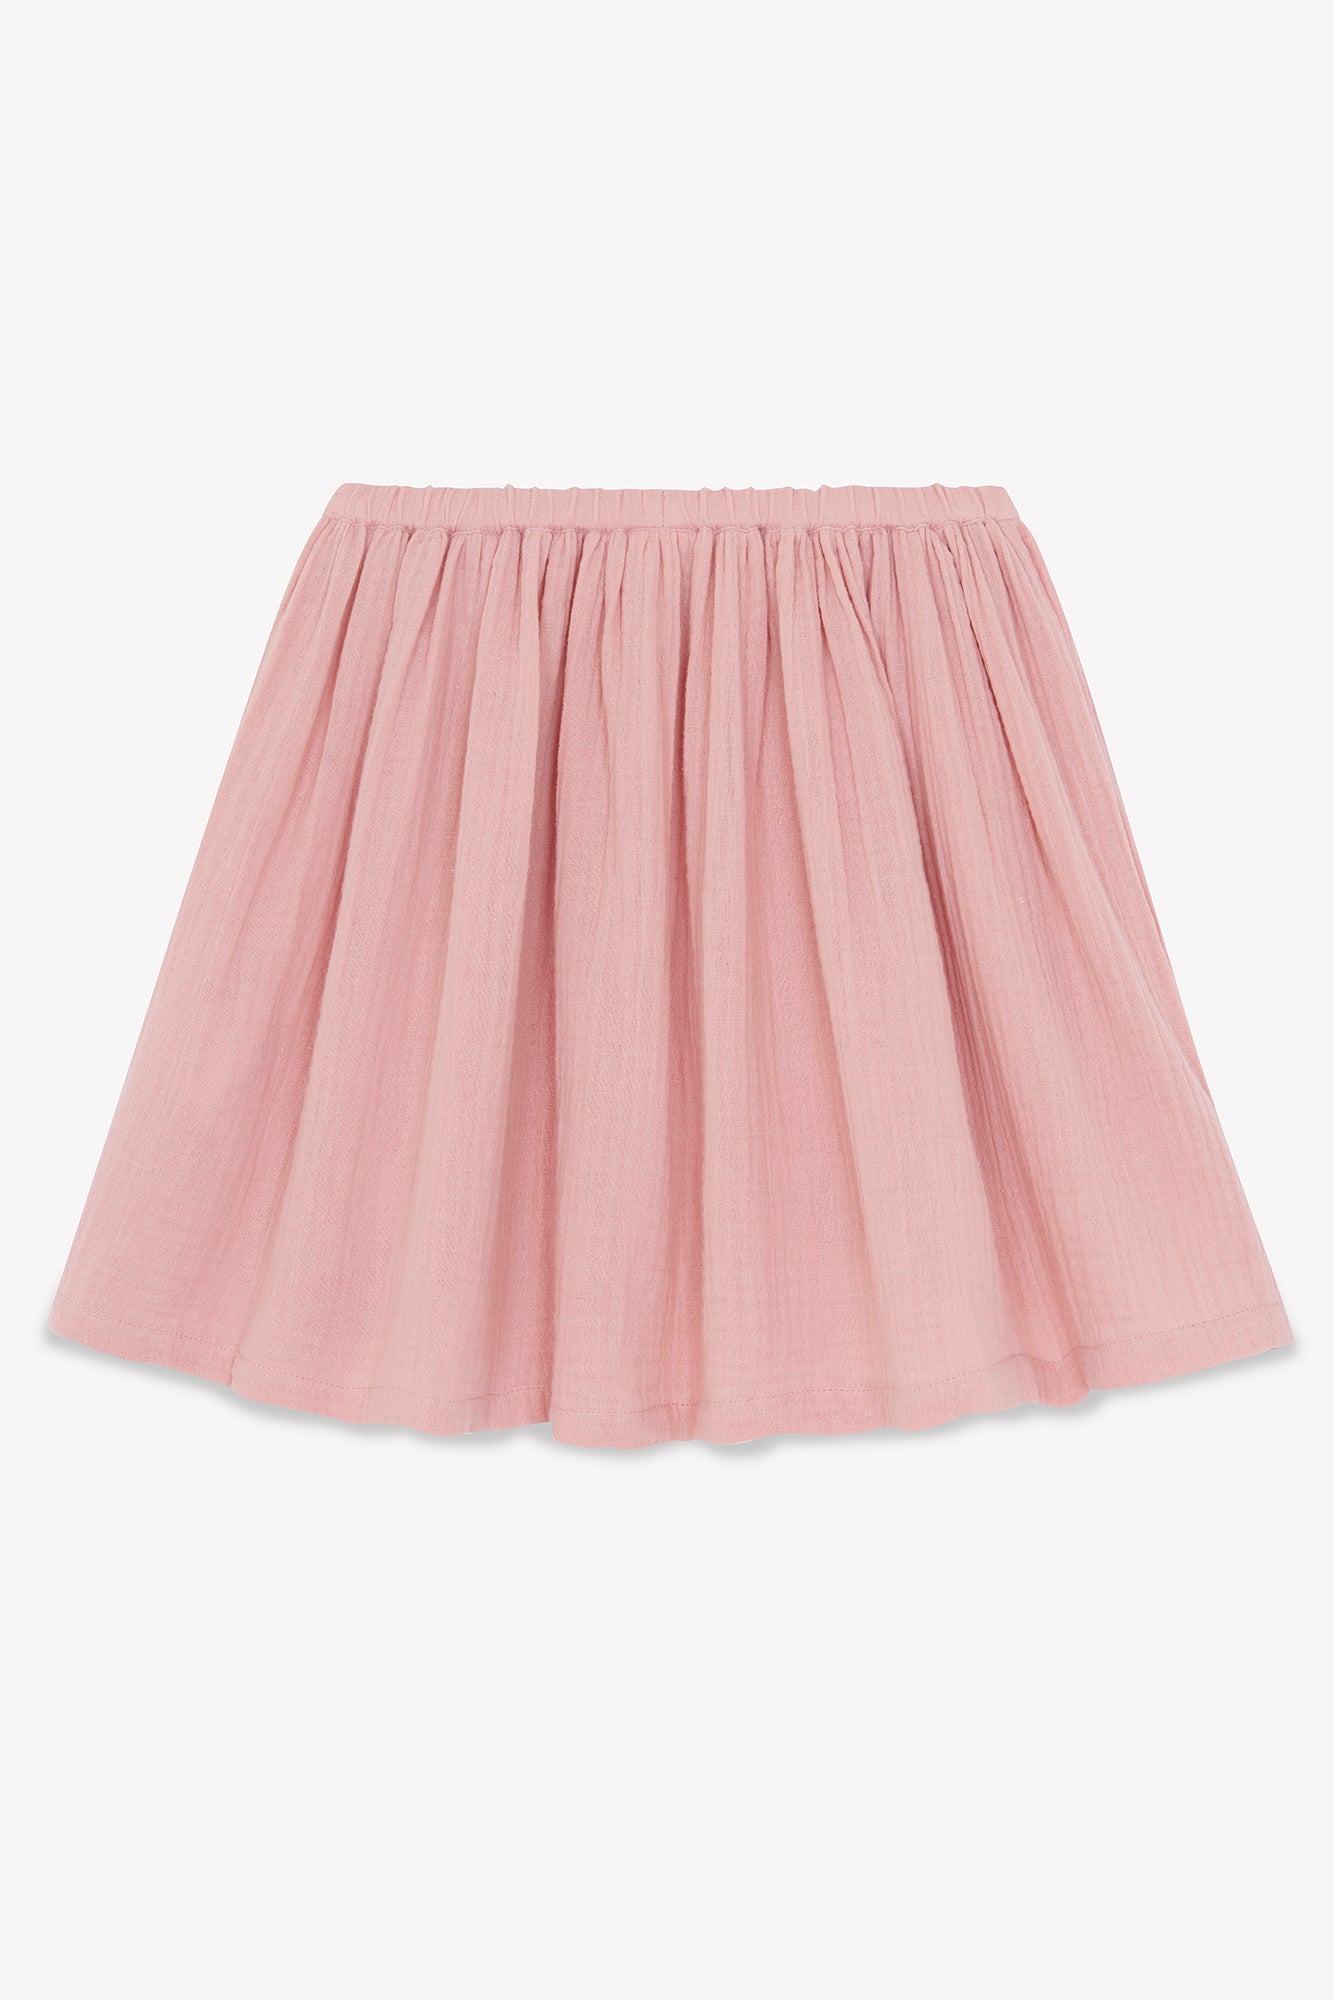 Skirt - Raspberry Pink GOTS certified organic cotton gauze